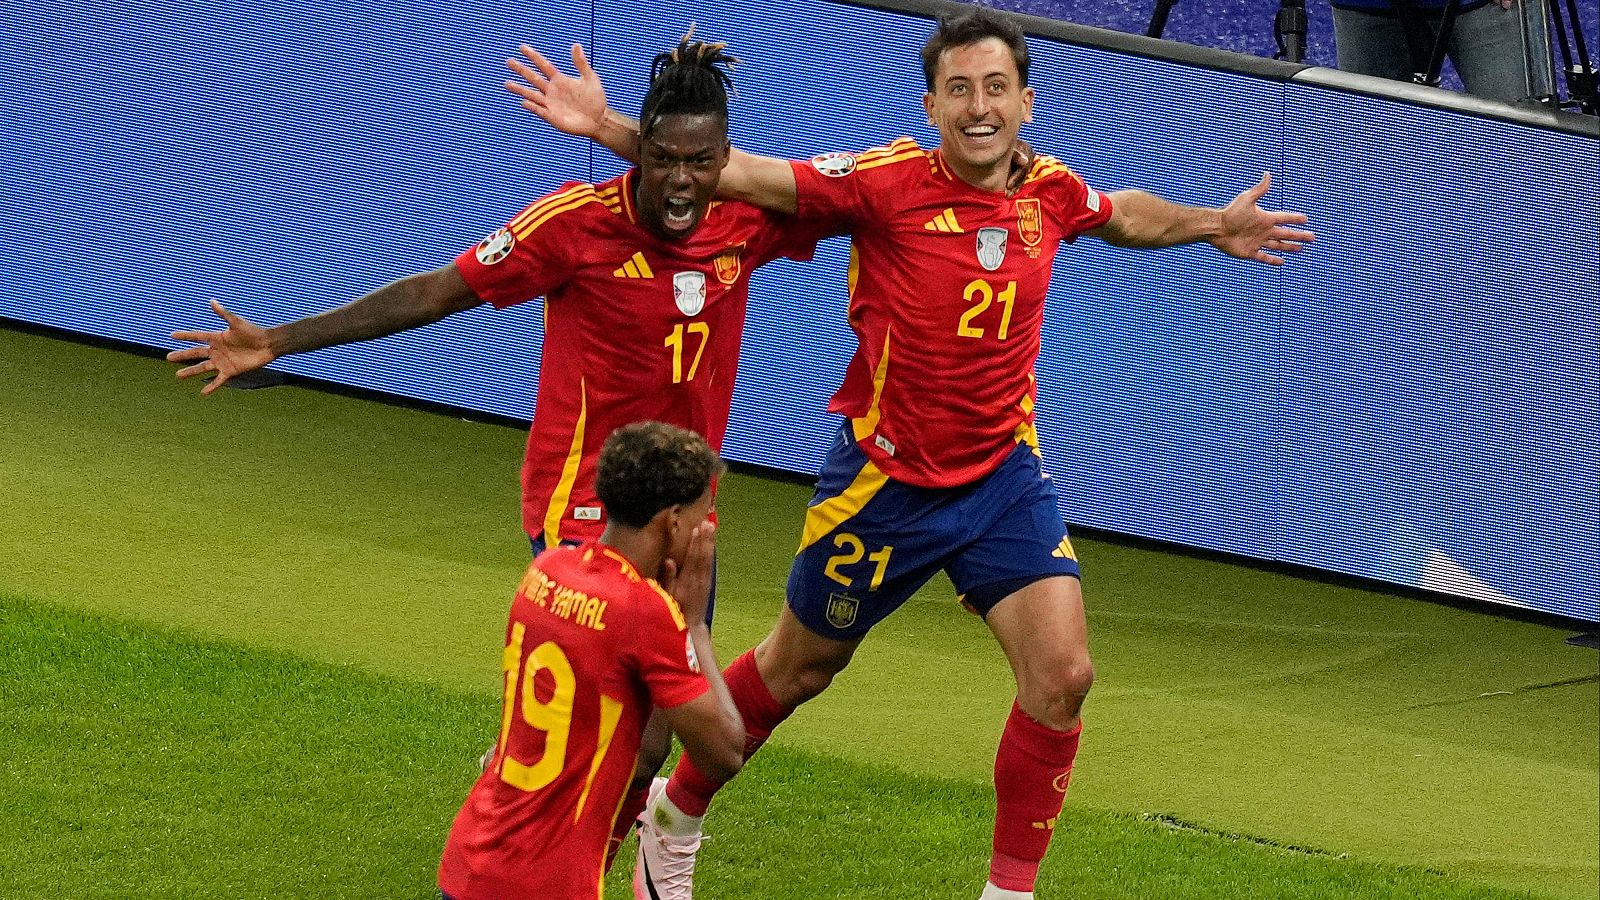 El gol de Oyarzabal que dio la Eurocopa a Espaa, al detalle